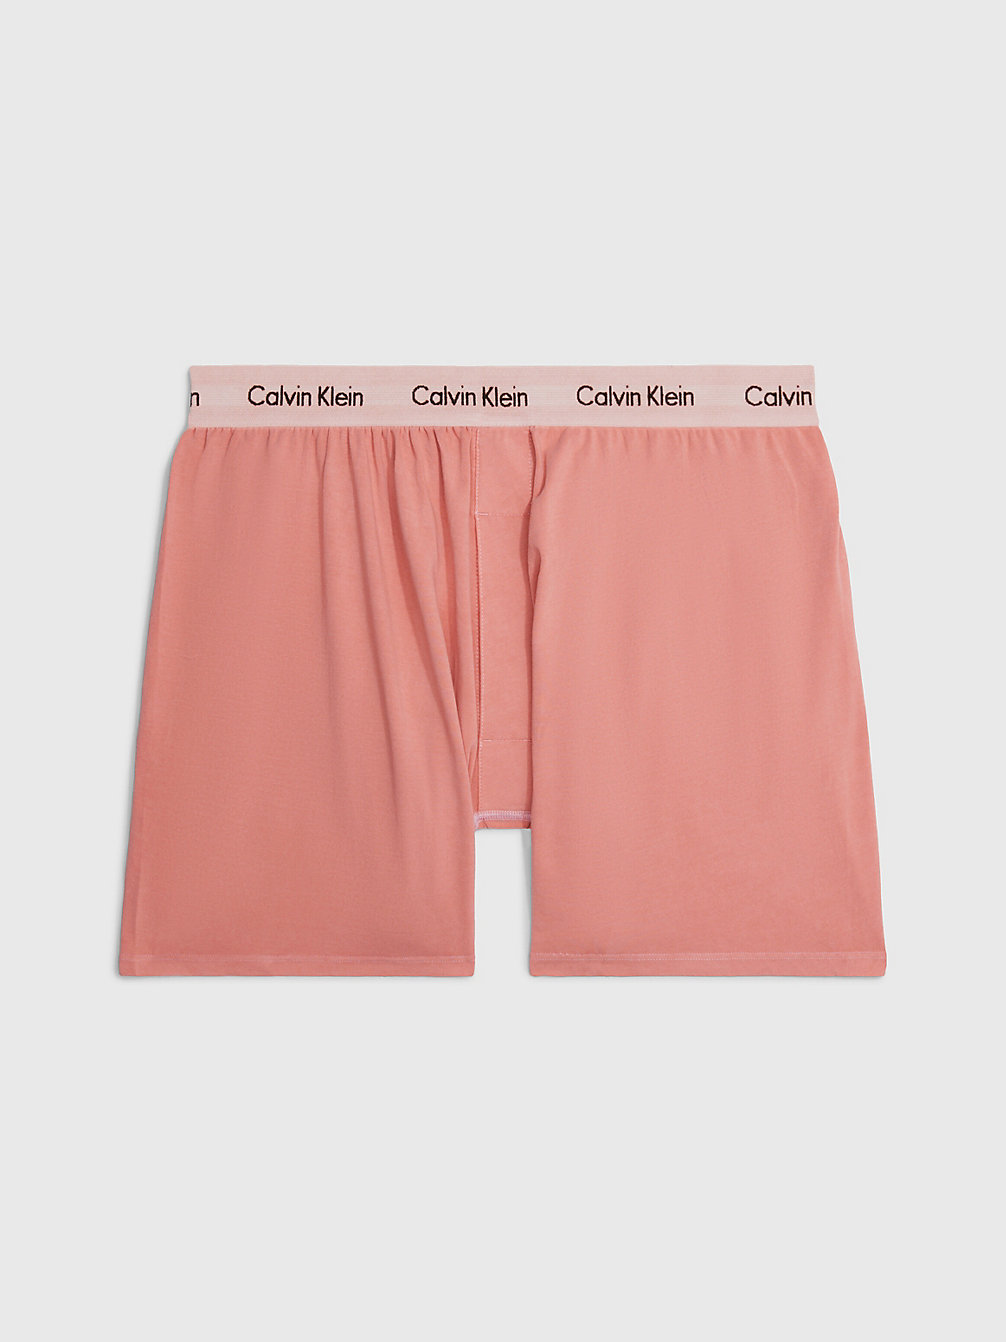 RUST Boxershorts - Modern Cotton undefined Herren Calvin Klein